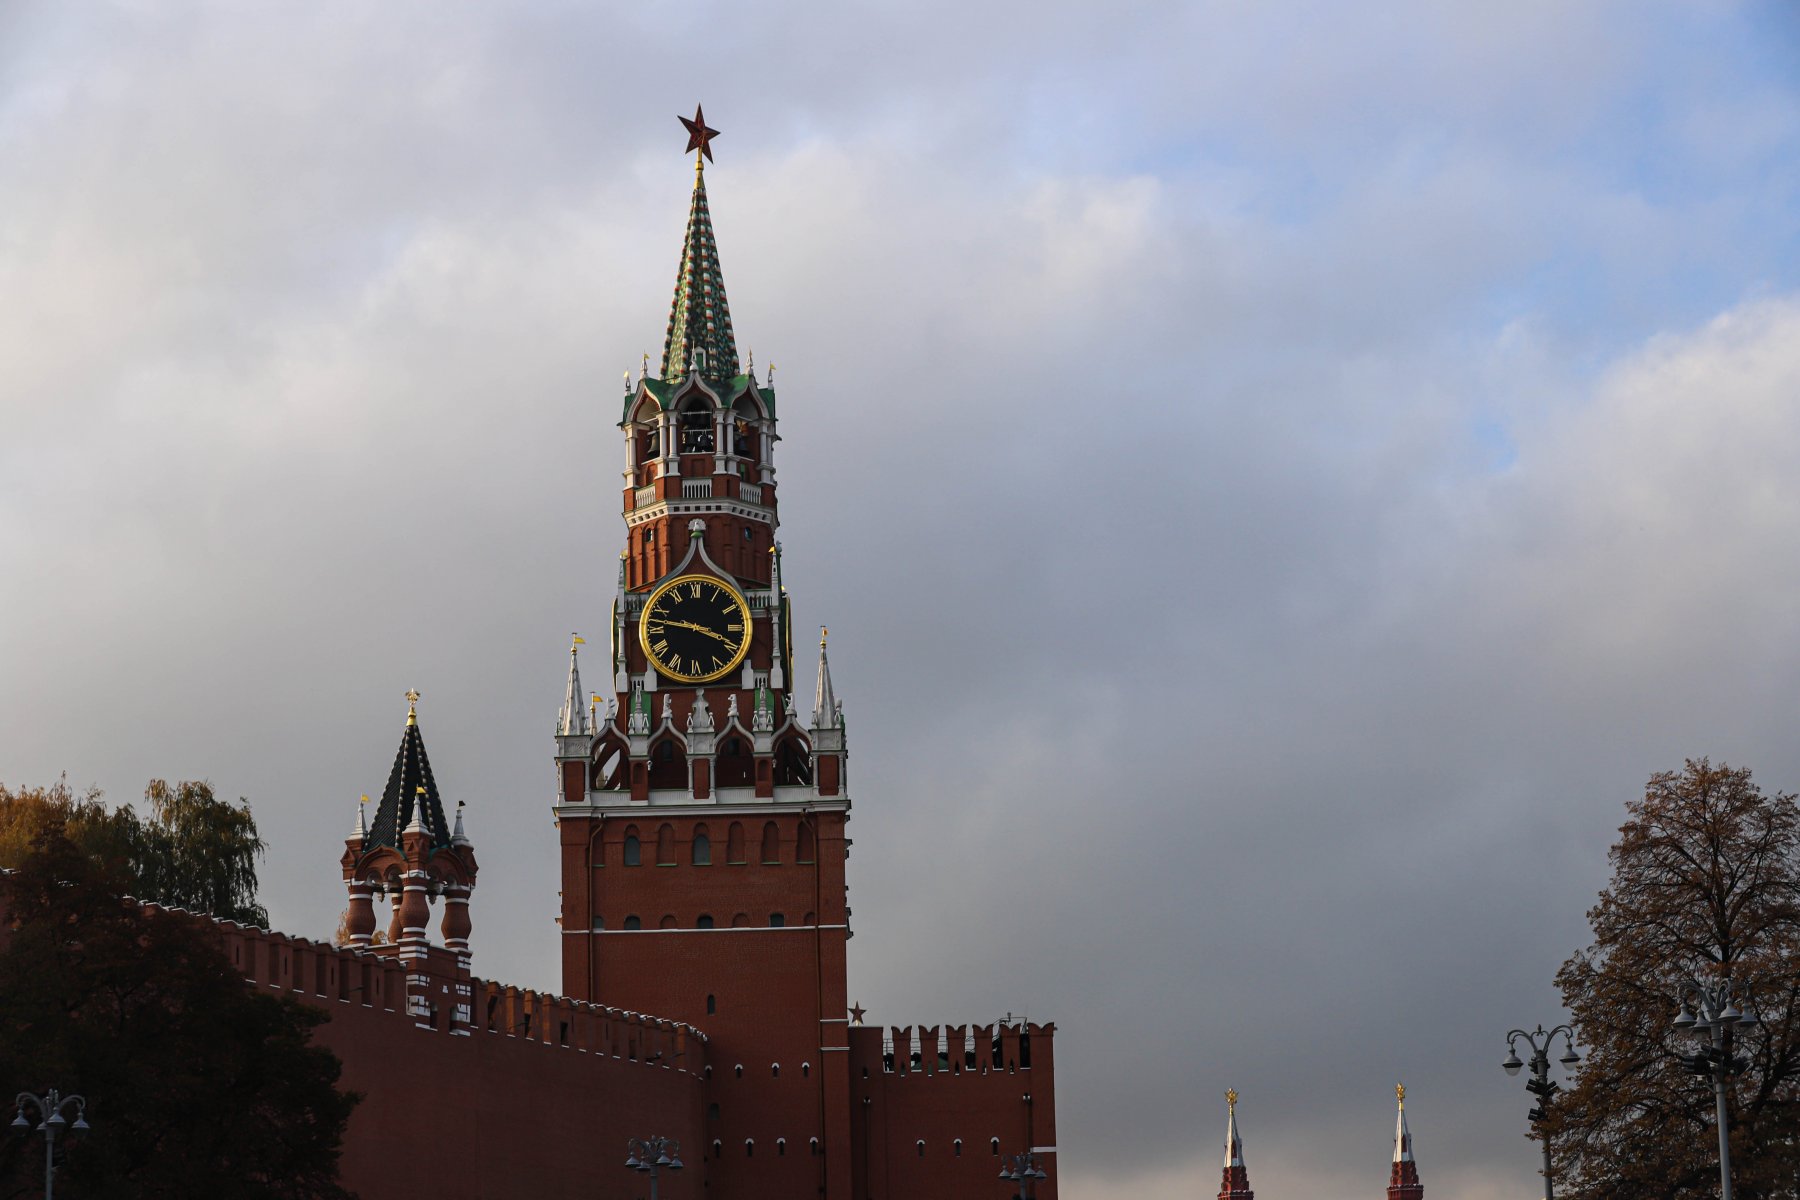 Сколько сейчас стоит жилье в Москве с видом на Кремль?